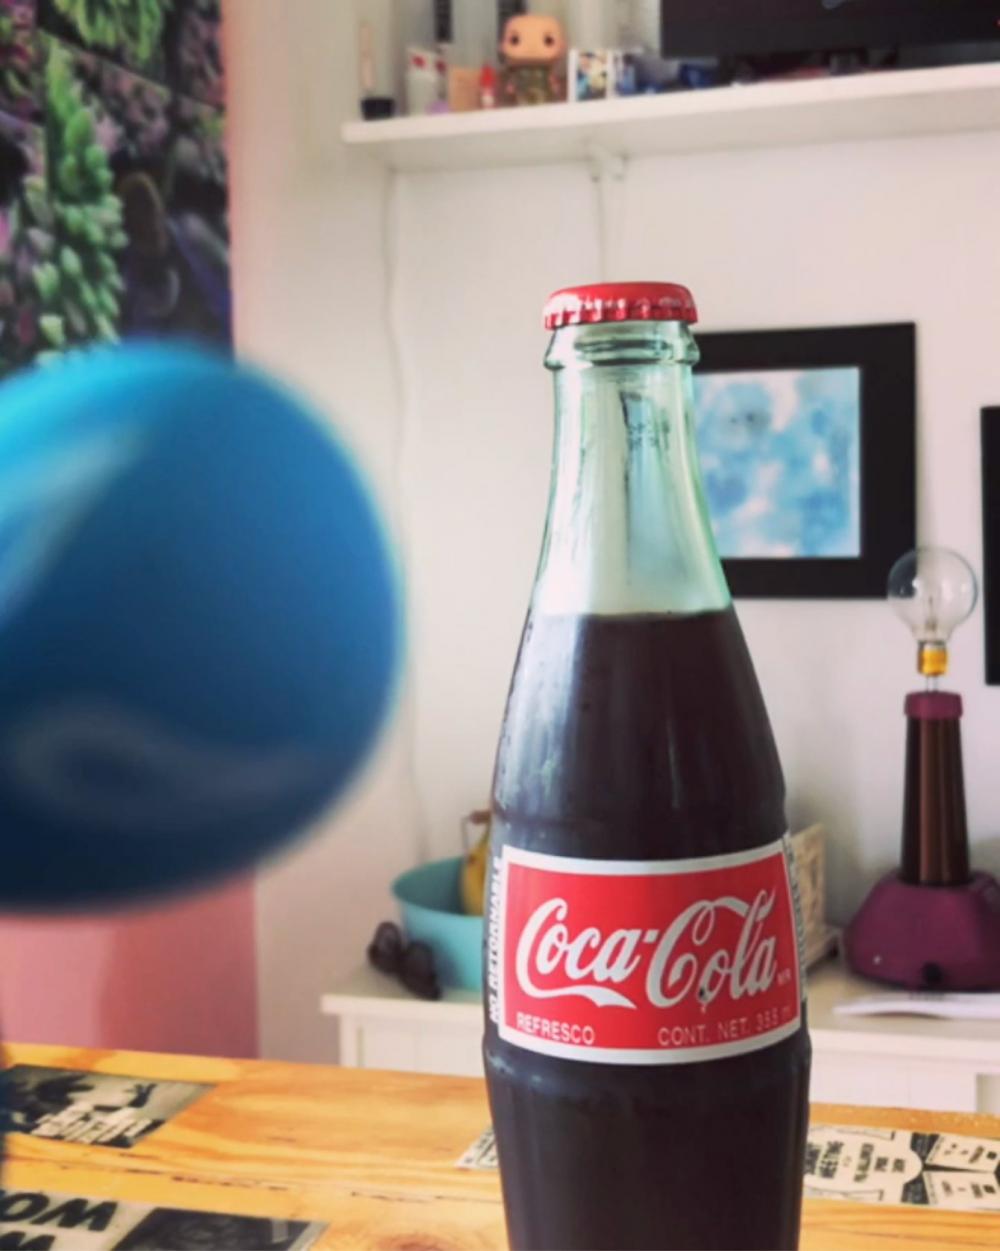 Coca-Cola, refresco -- opened